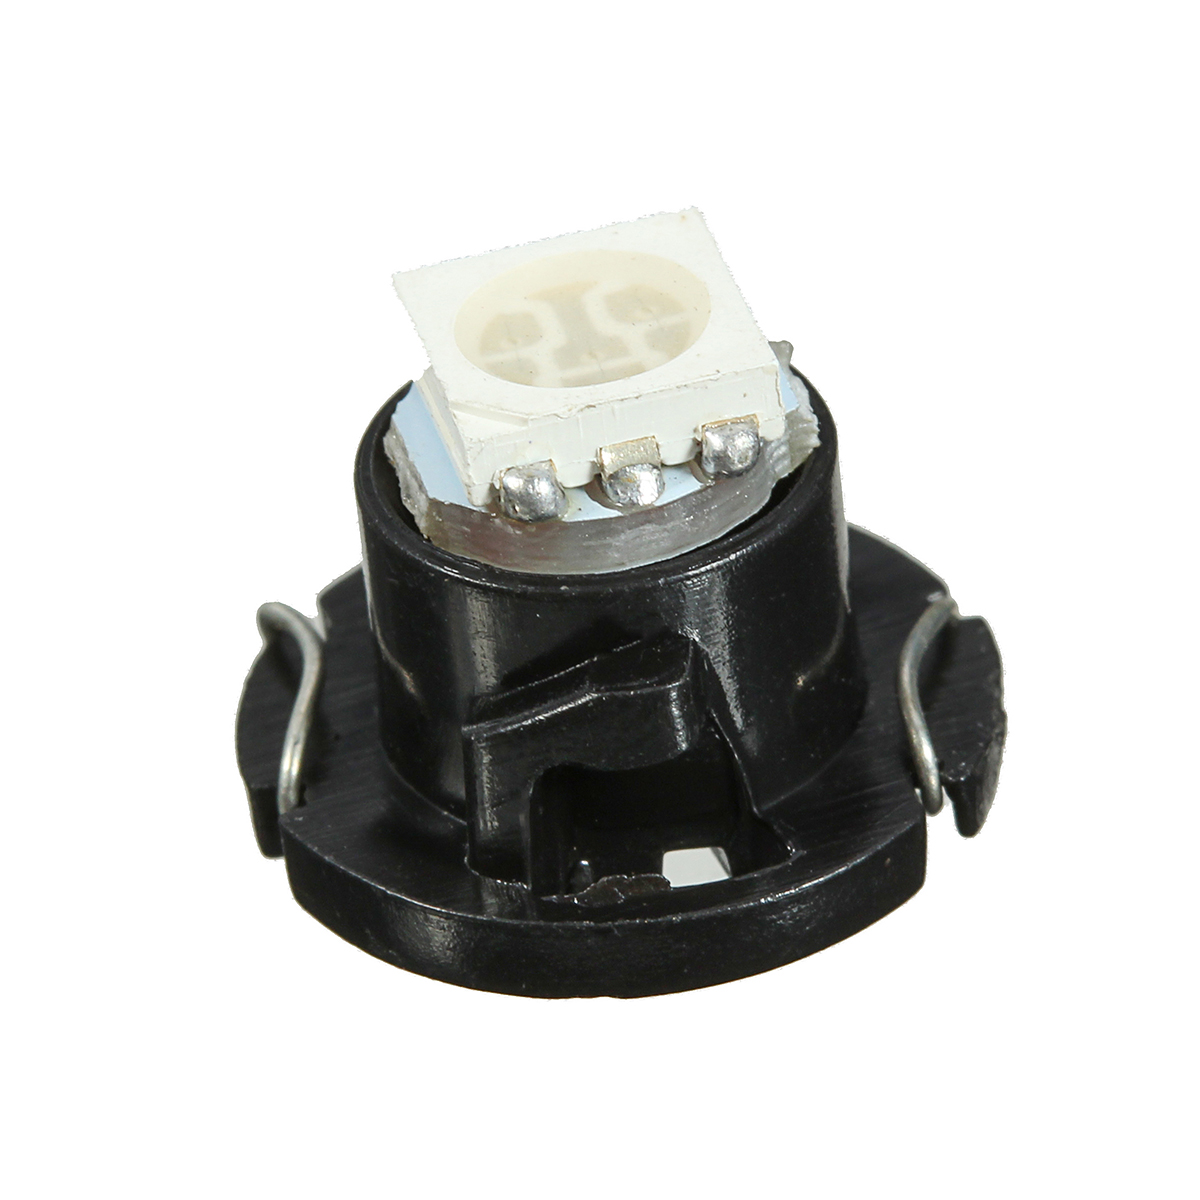 1pcs-T5-Wedge-5050-SMD-LED-Bulb-Dashboard-Gauge-Cluster-Instrument-Light-12V-1361848-2